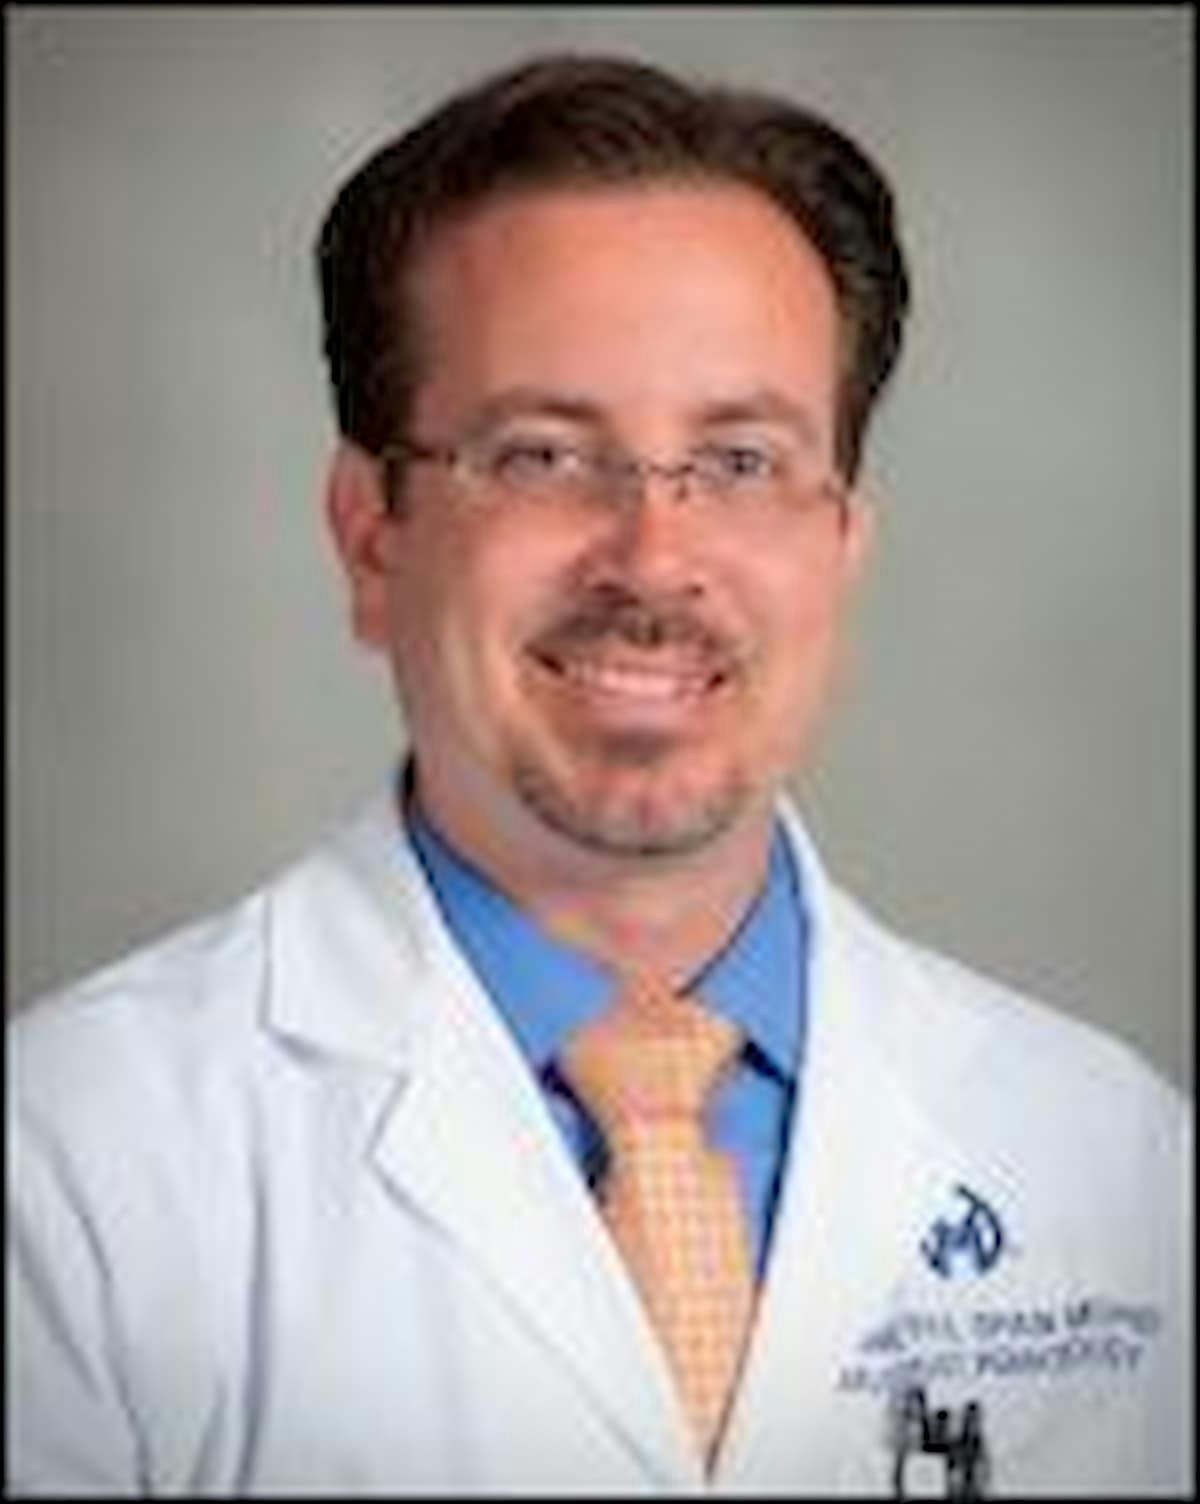 Ken Shain, MD, PhD  Moffitt Cancer Center  Tampa, Florida